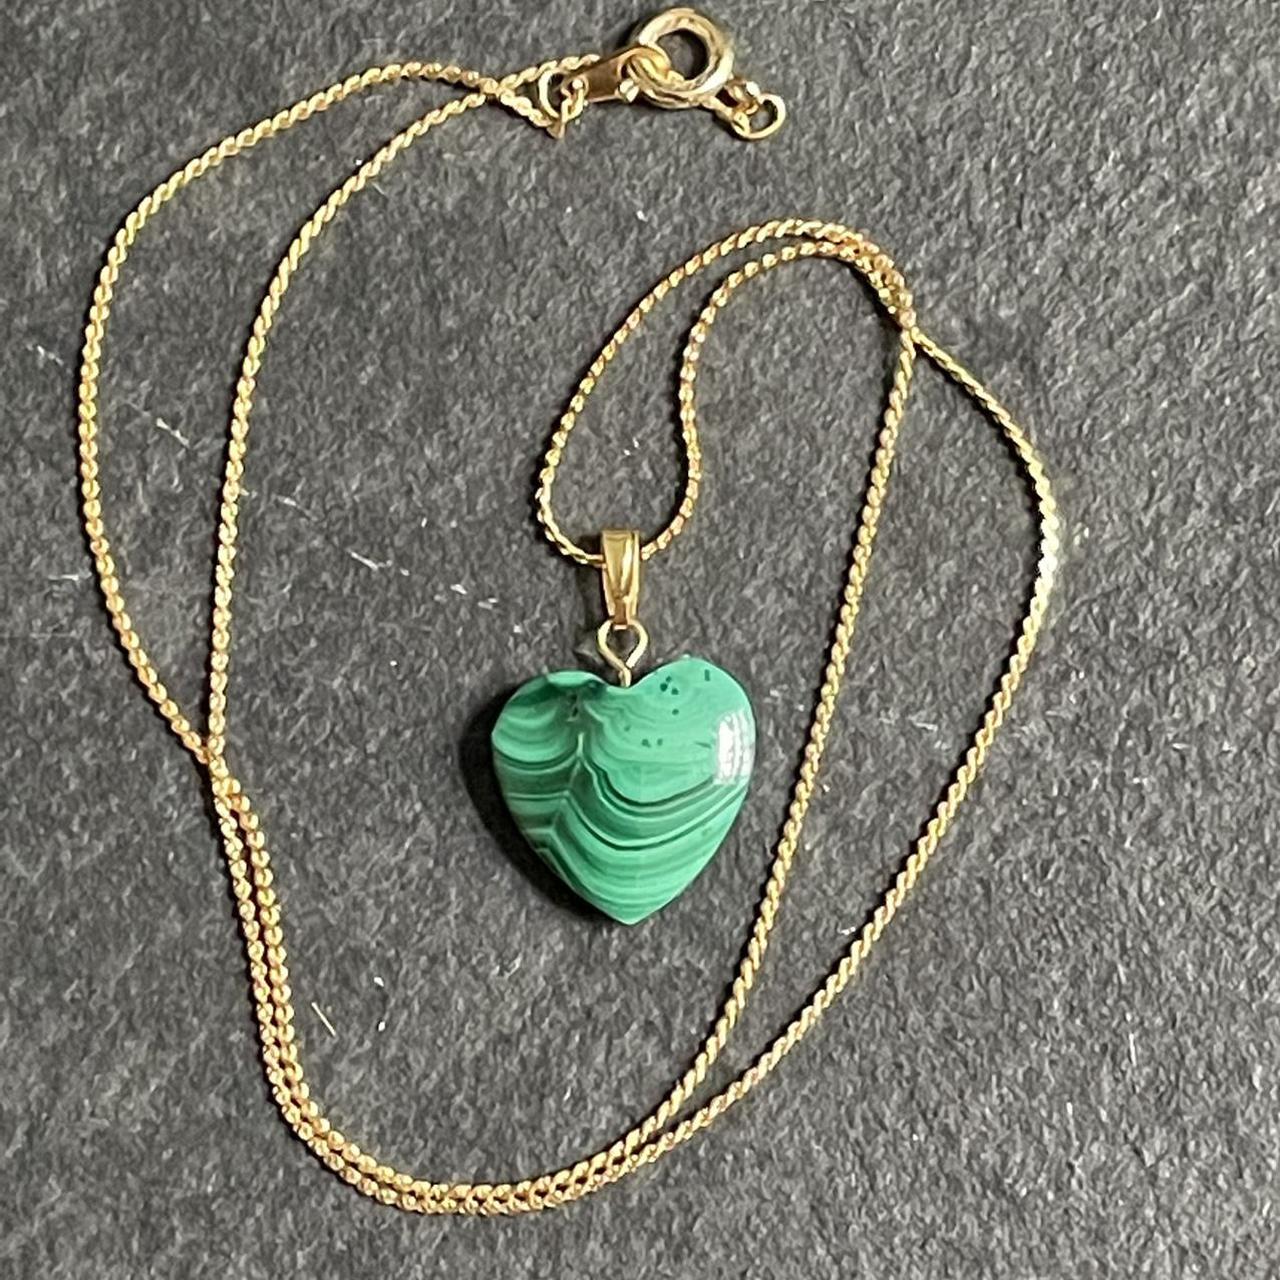 Product Image 2 - Malachite heart gemstone necklace. Brand